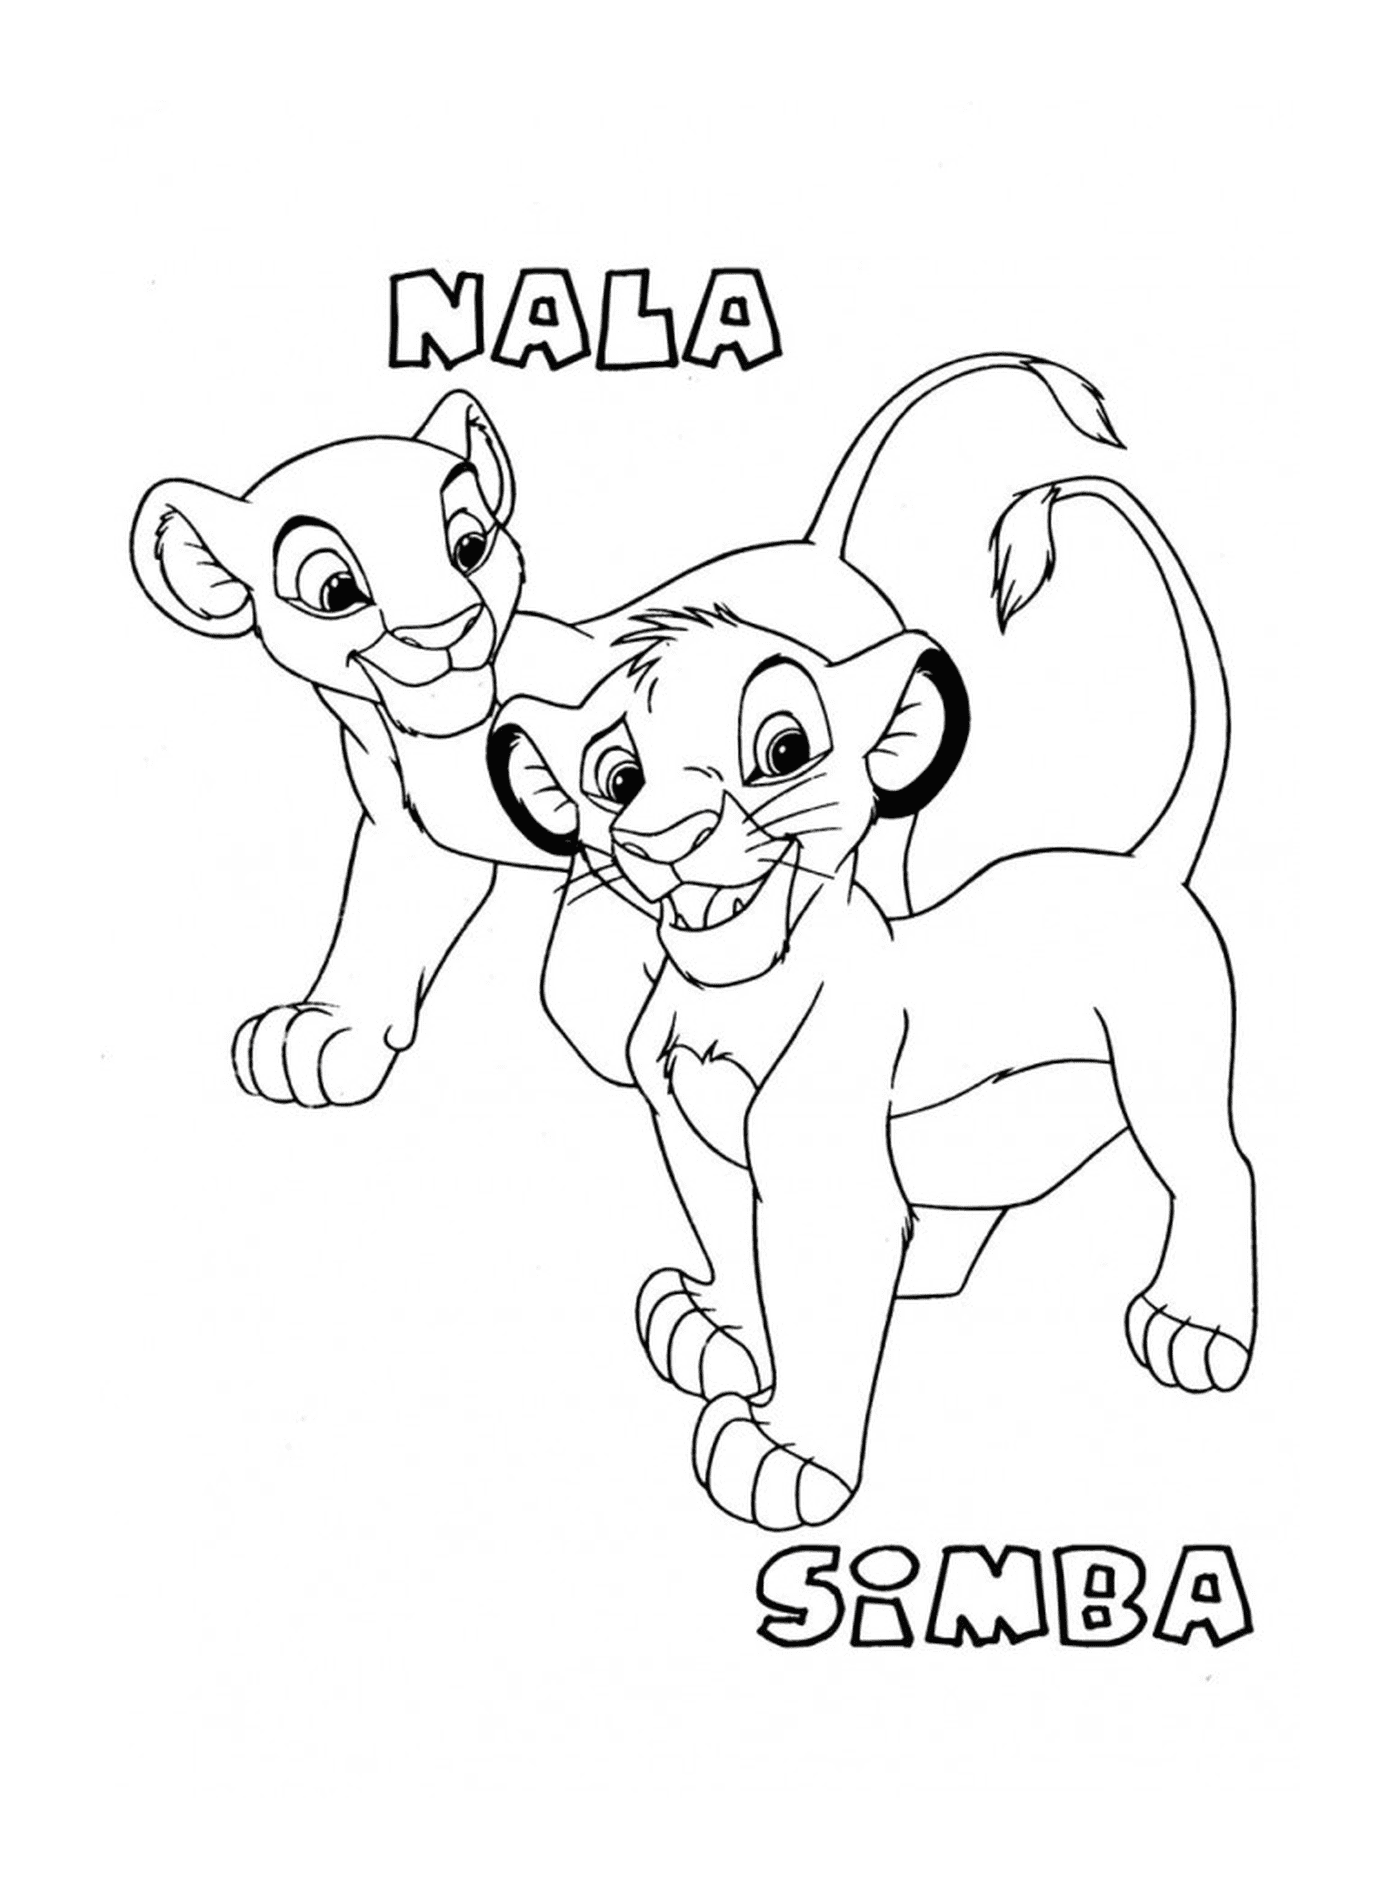  Simba und Nala Babys im König der Löwen 